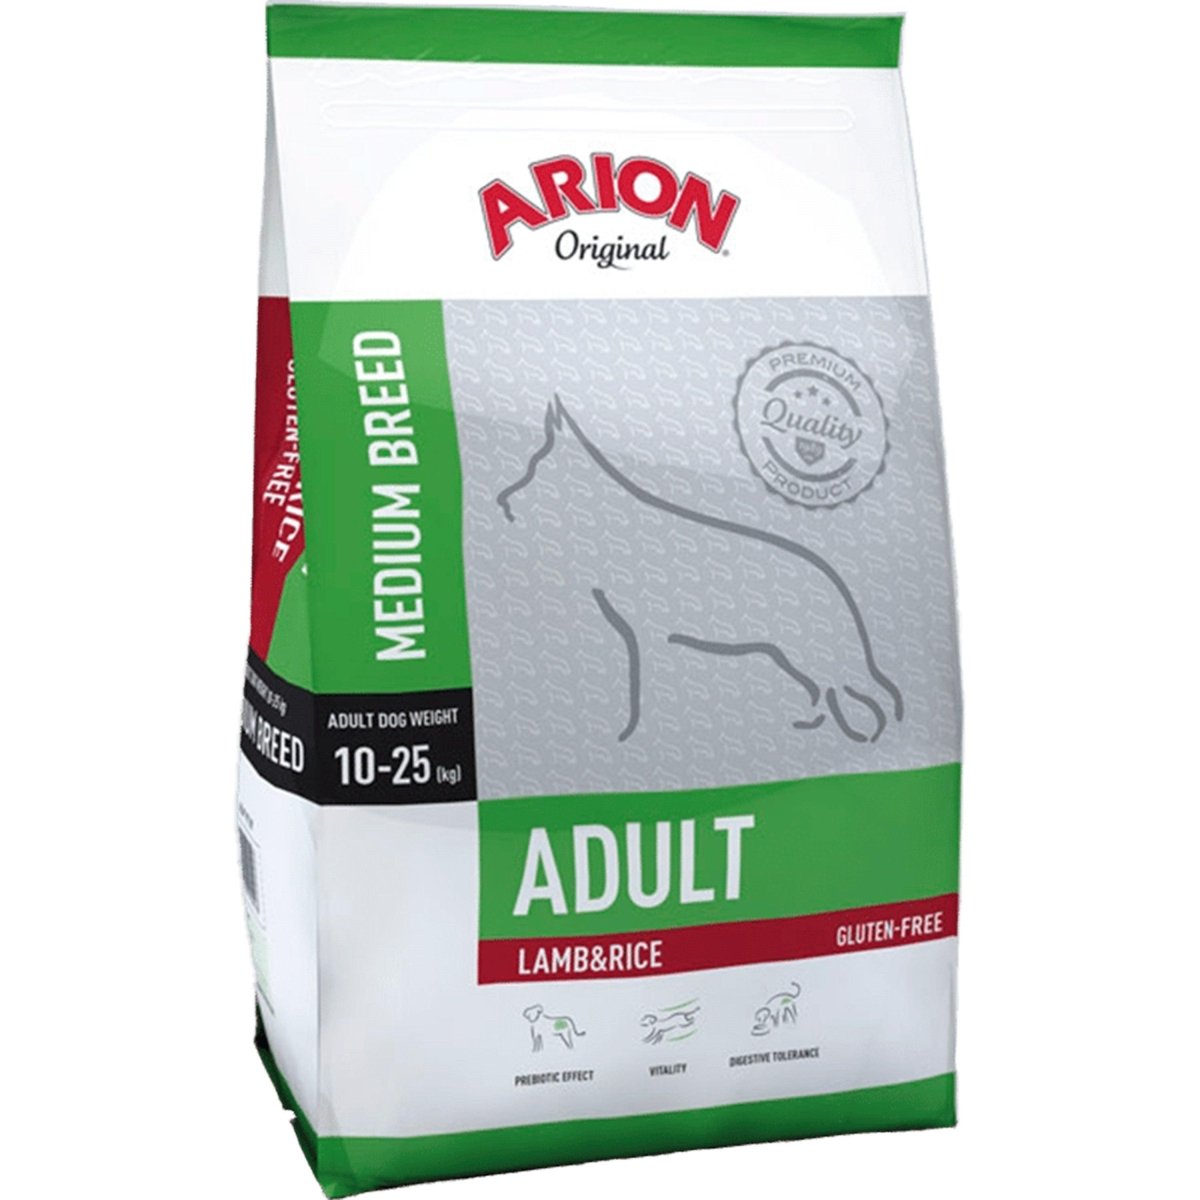 Se Arion Original Adult Medium Breed Lamb & Rice - 3 kg hos animondo